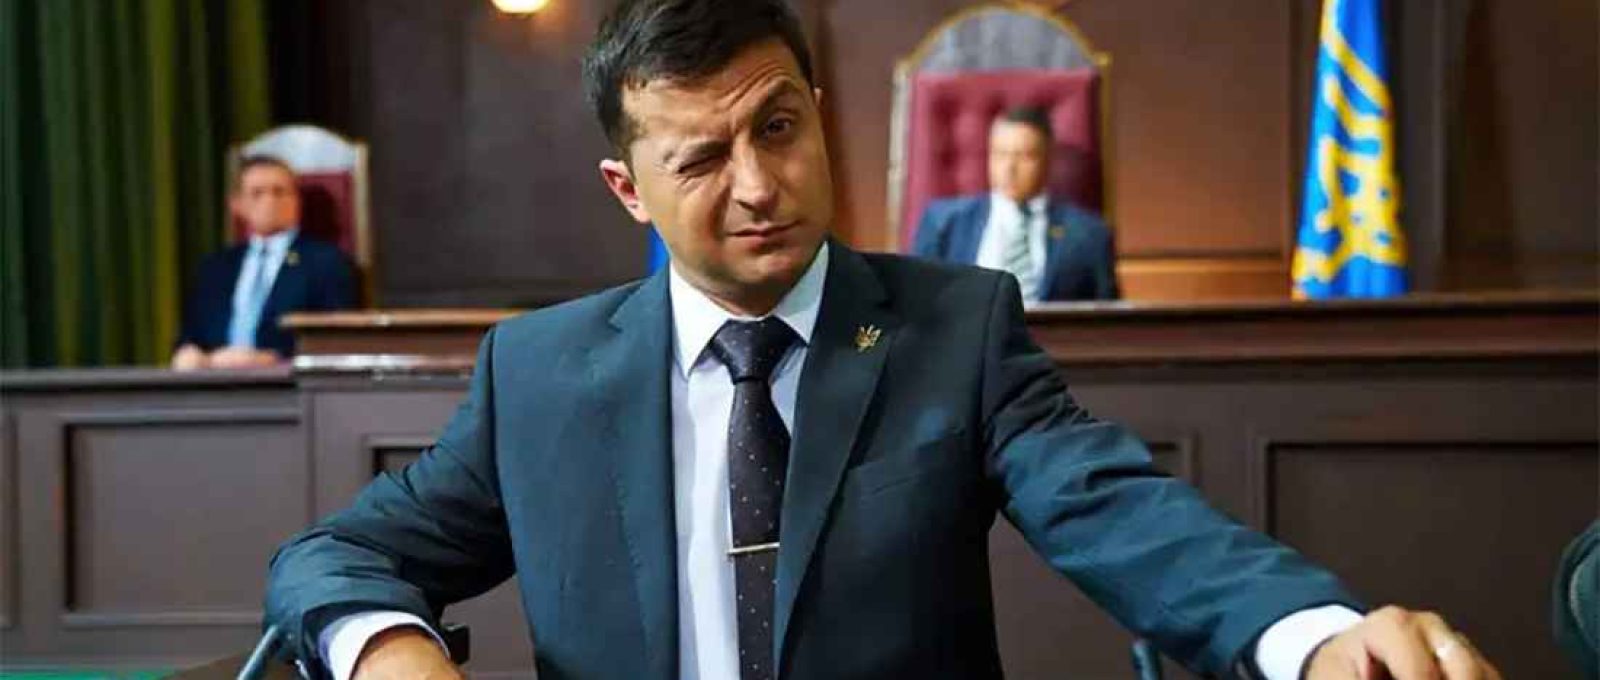 O atual presidente ucraniano, Volodymyr Zelensky, em cena da série “Servant of the People” (“Servo do Povo”), em cartaz em alguns serviços de streaming.